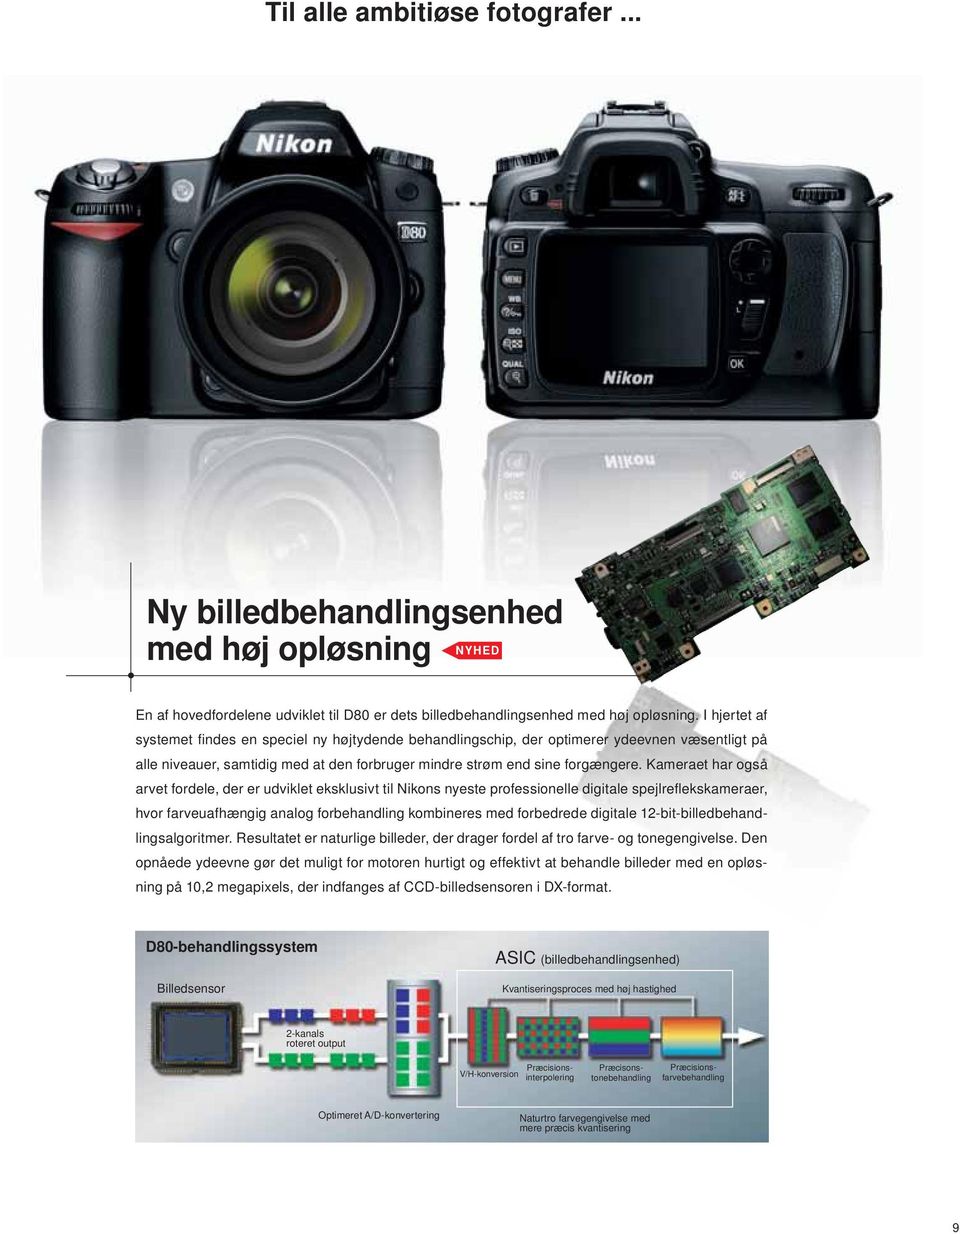 Kameraet har også arvet fordele, der er udviklet eksklusivt til Nikons nyeste professionelle digitale spejlrefl ekskameraer, hvor farveuafhængig analog forbehandling kombineres med forbedrede